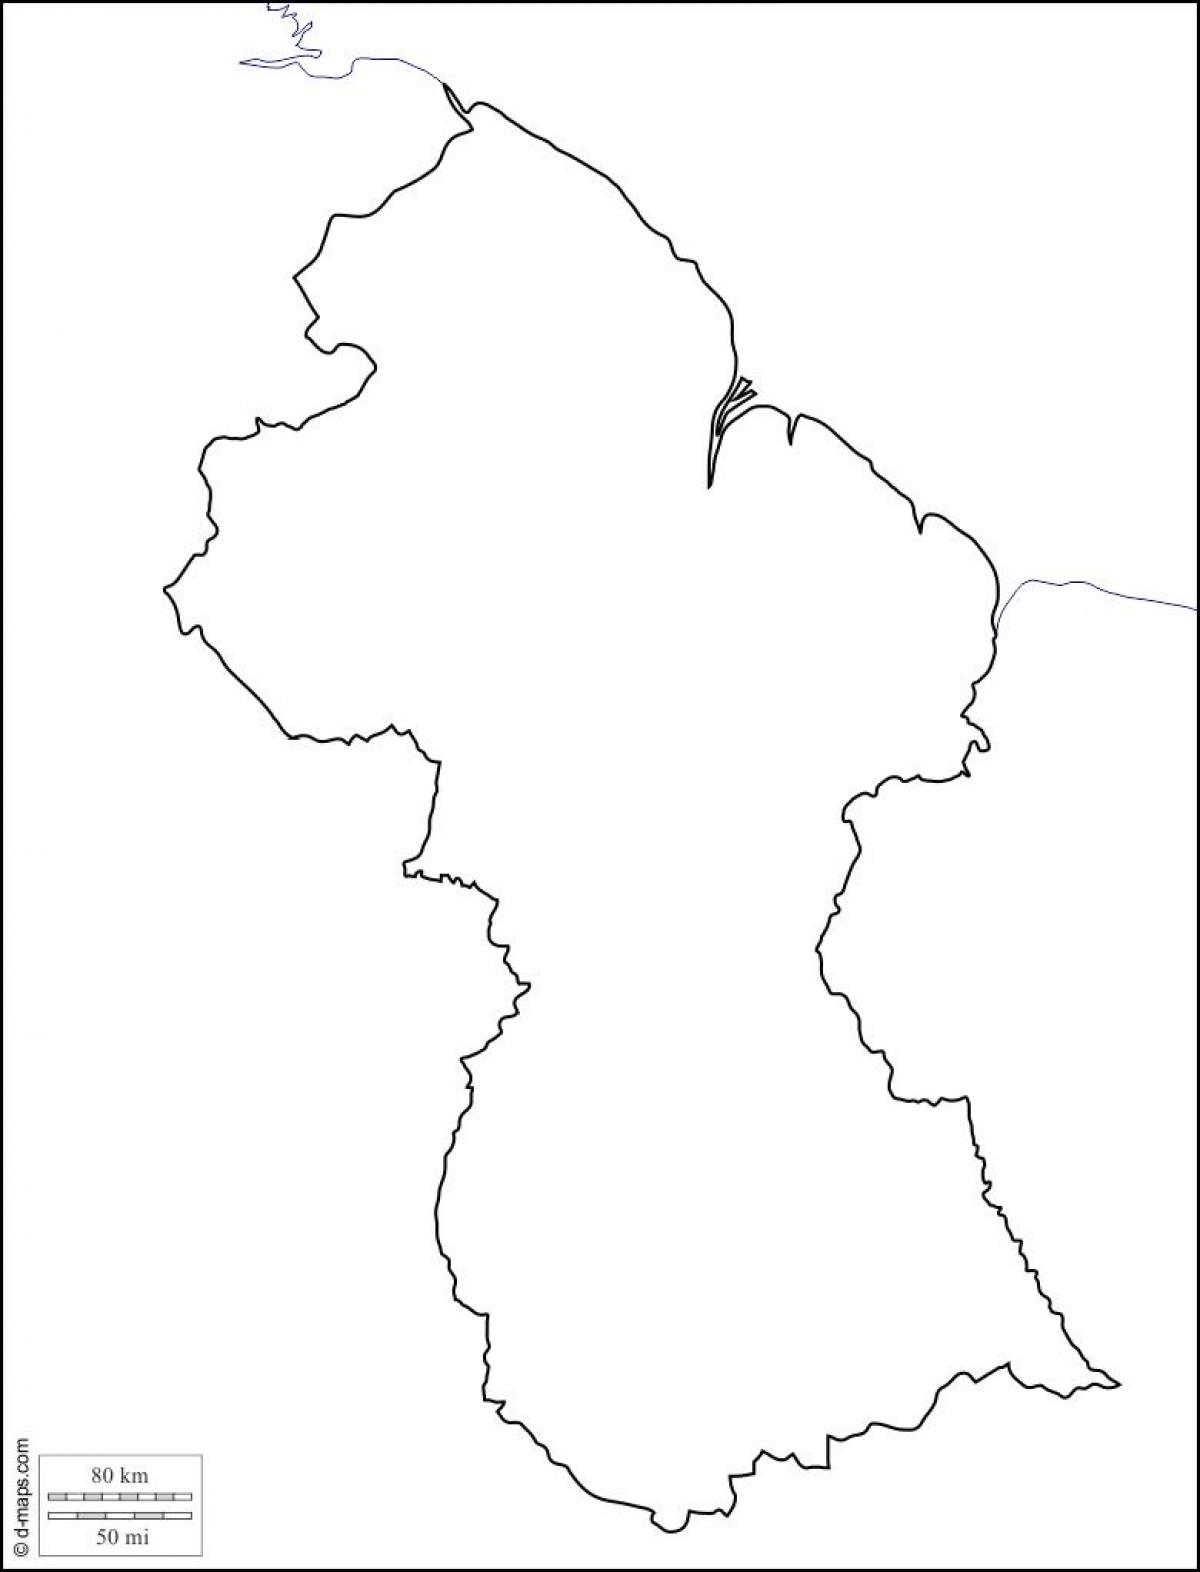 leë kaart van Guyana